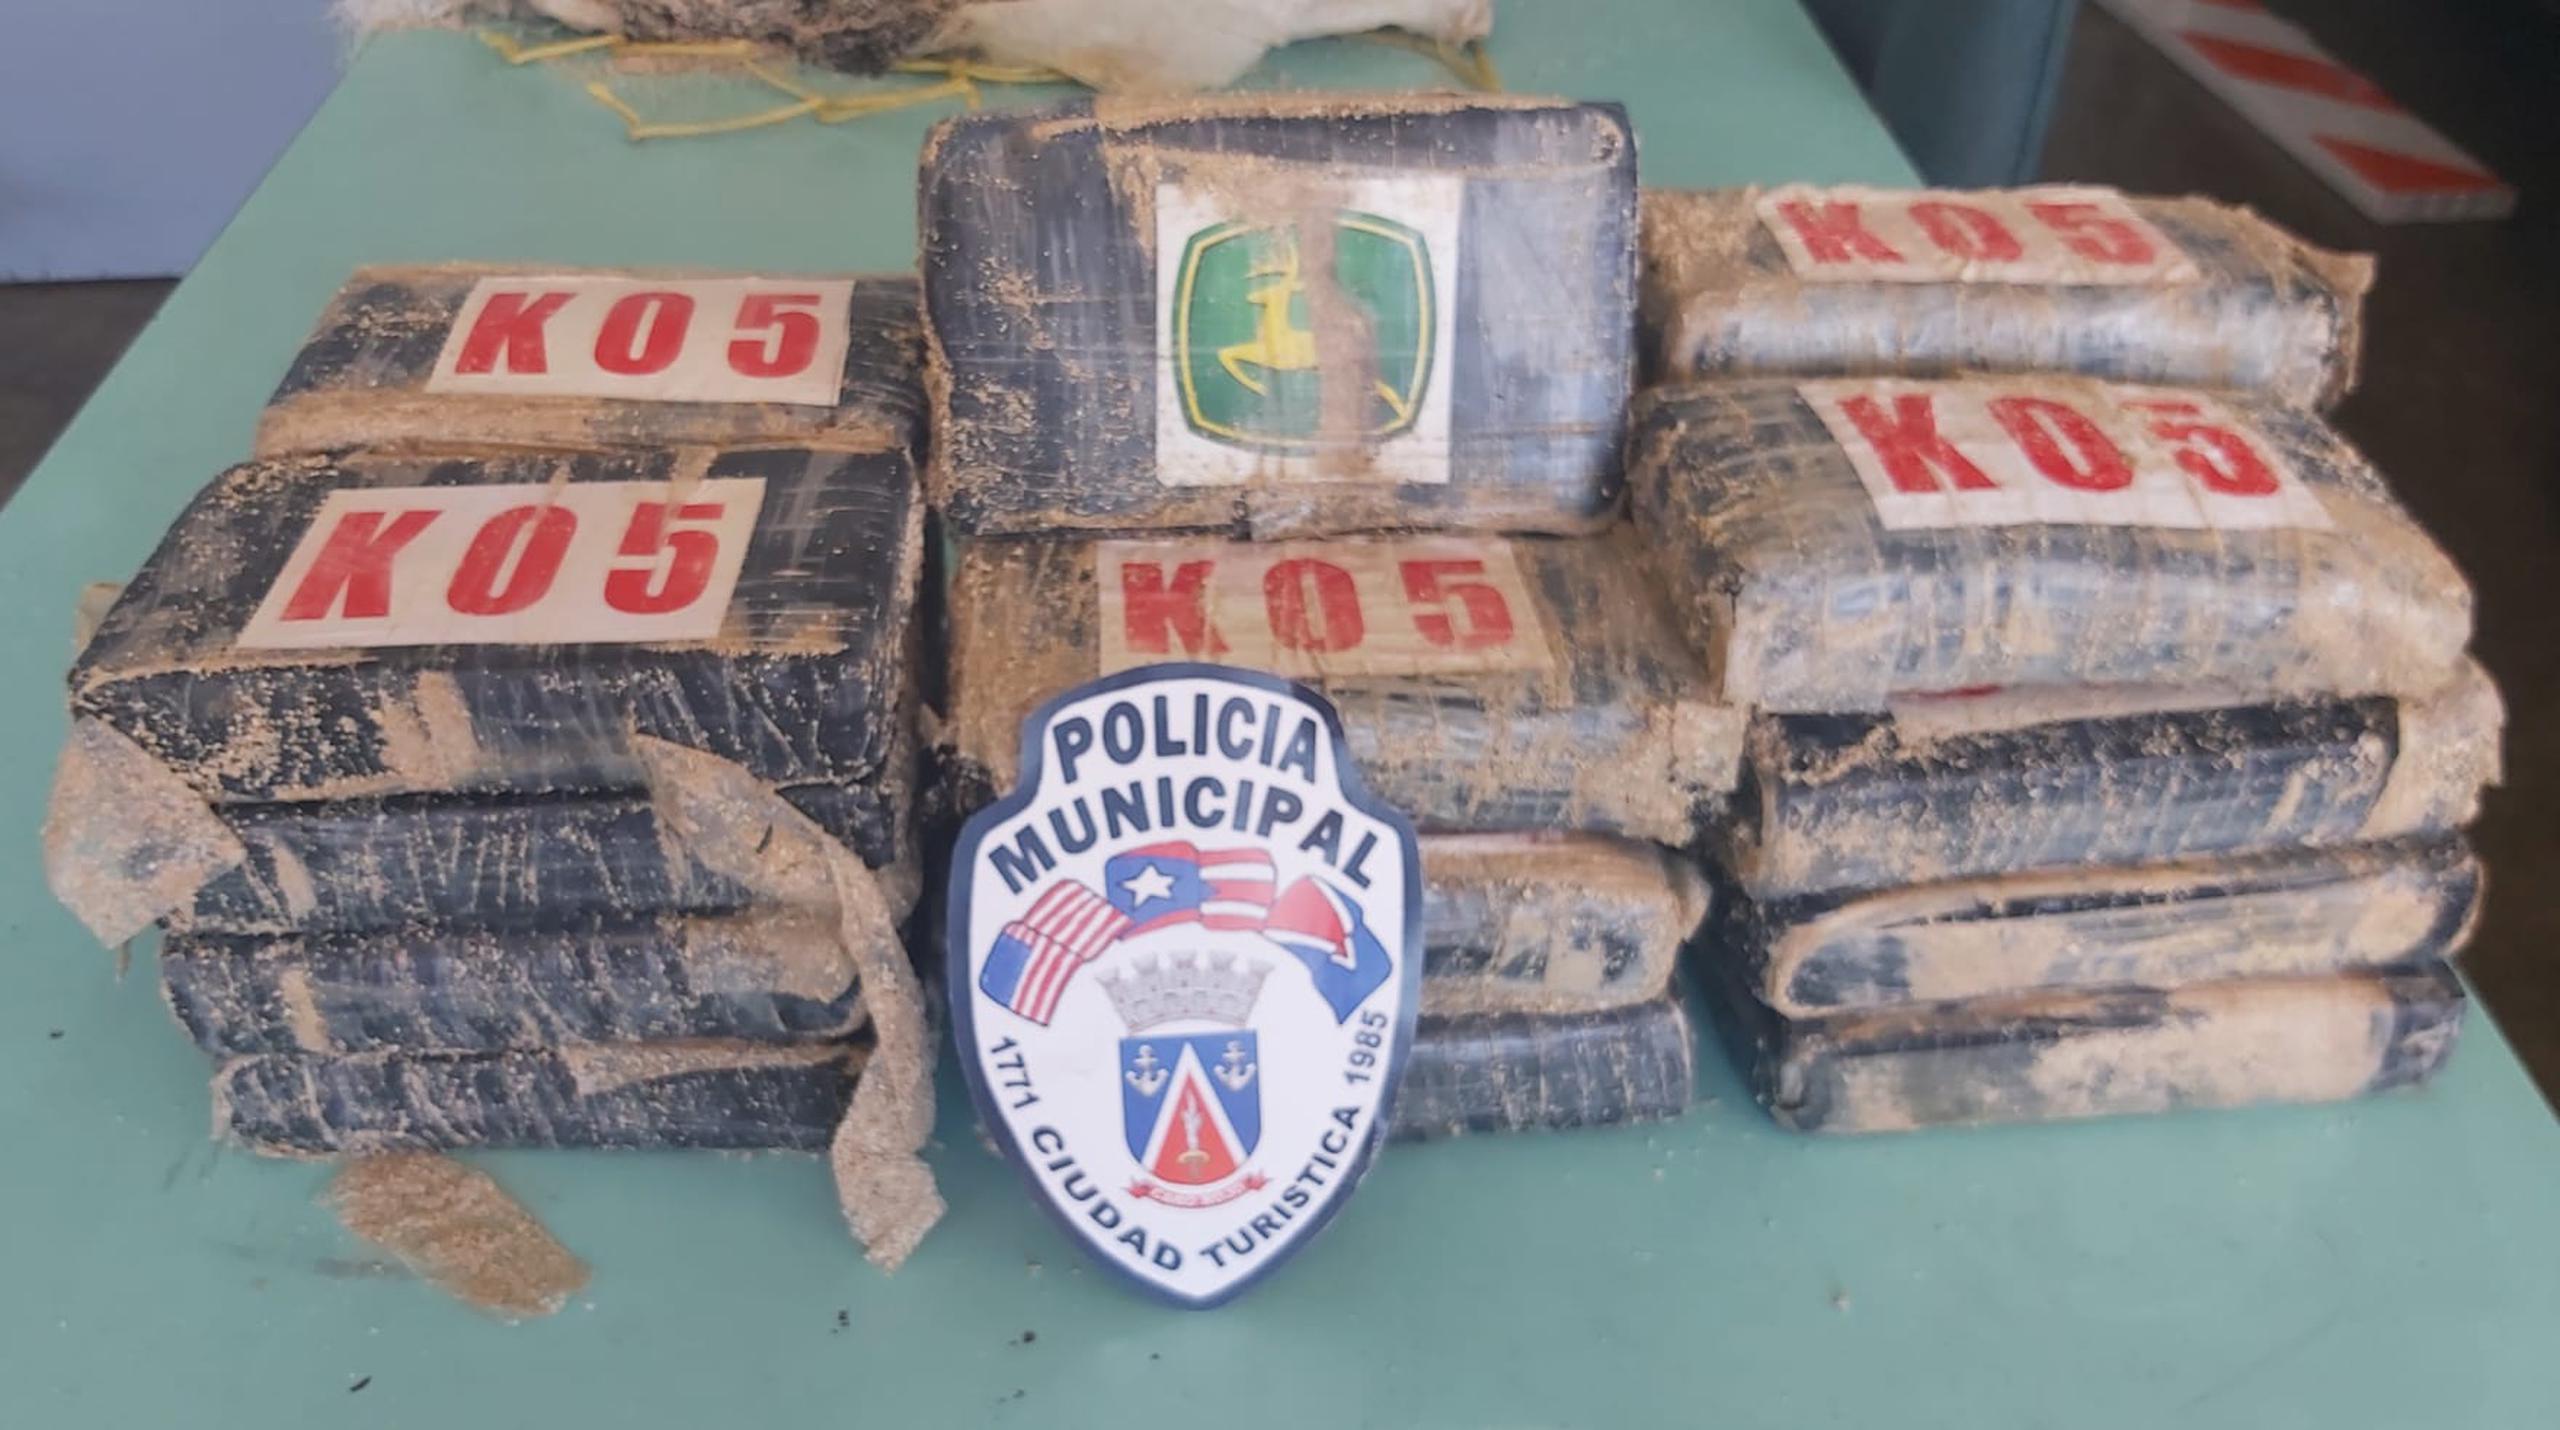 La Policía Municipal de Cabo Rojo ocupó en el sector Los Morillos de ese pueblo 24 bloques de cocaína valorados en medio millón de dólares.